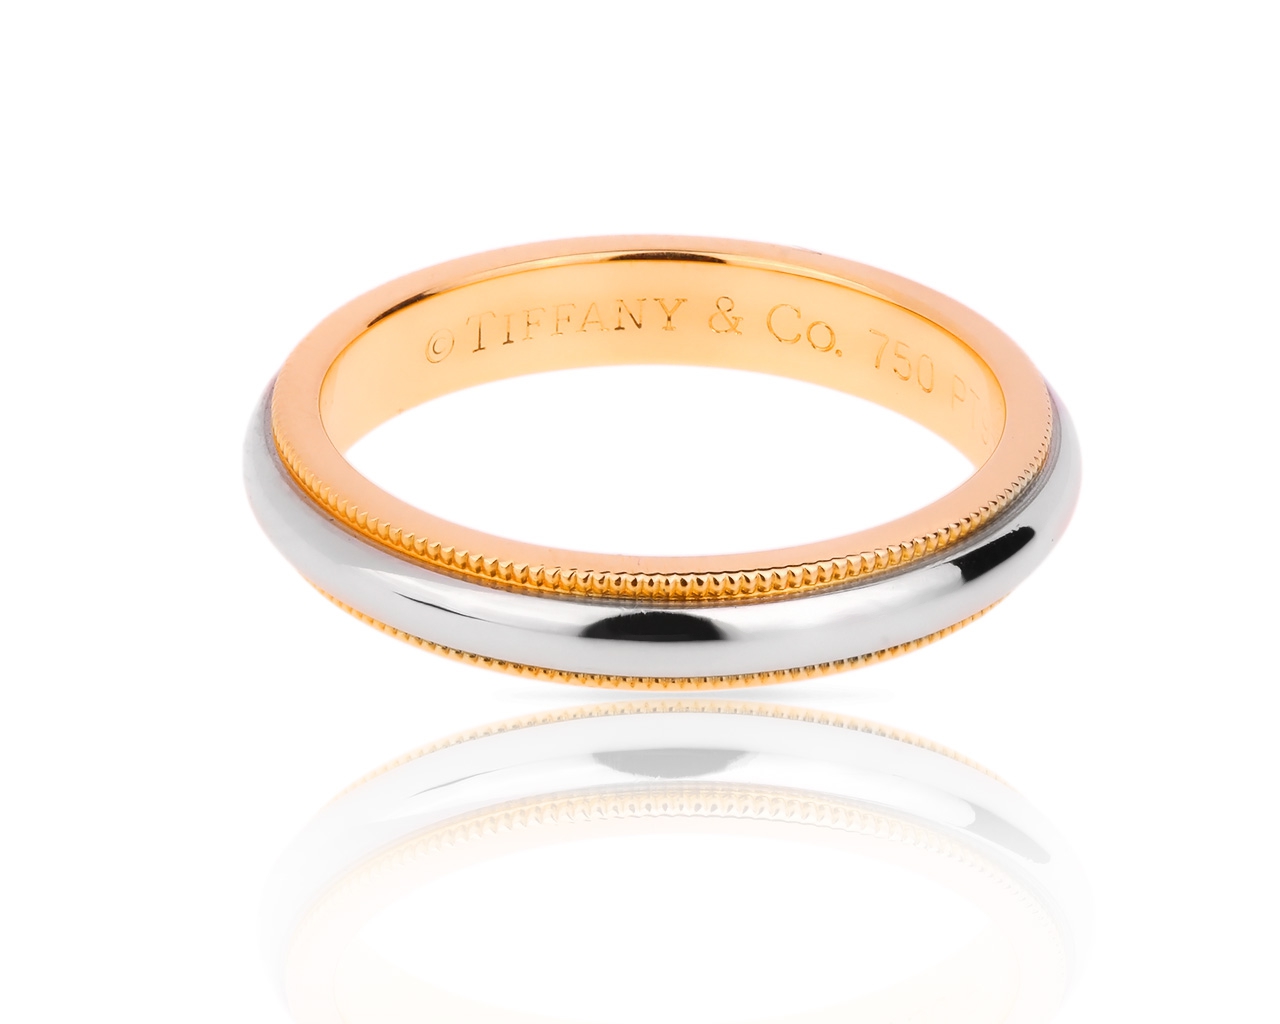 Идеальное кольцо из платины и золота Tiffany&Co Milgrain